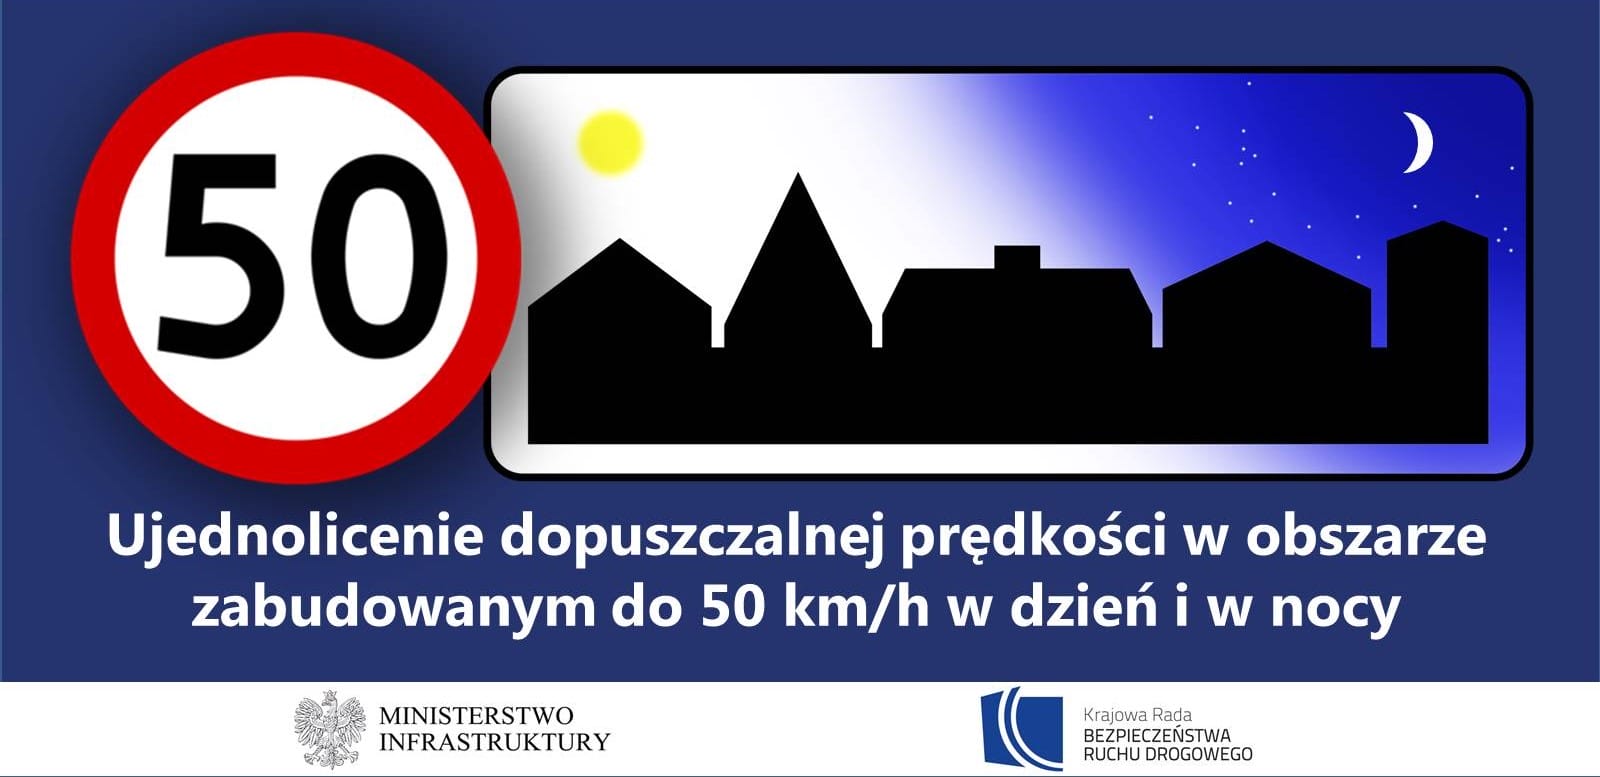 WAŻNE! Nowe przepisy ruchu drogowego już od 1 czerwca